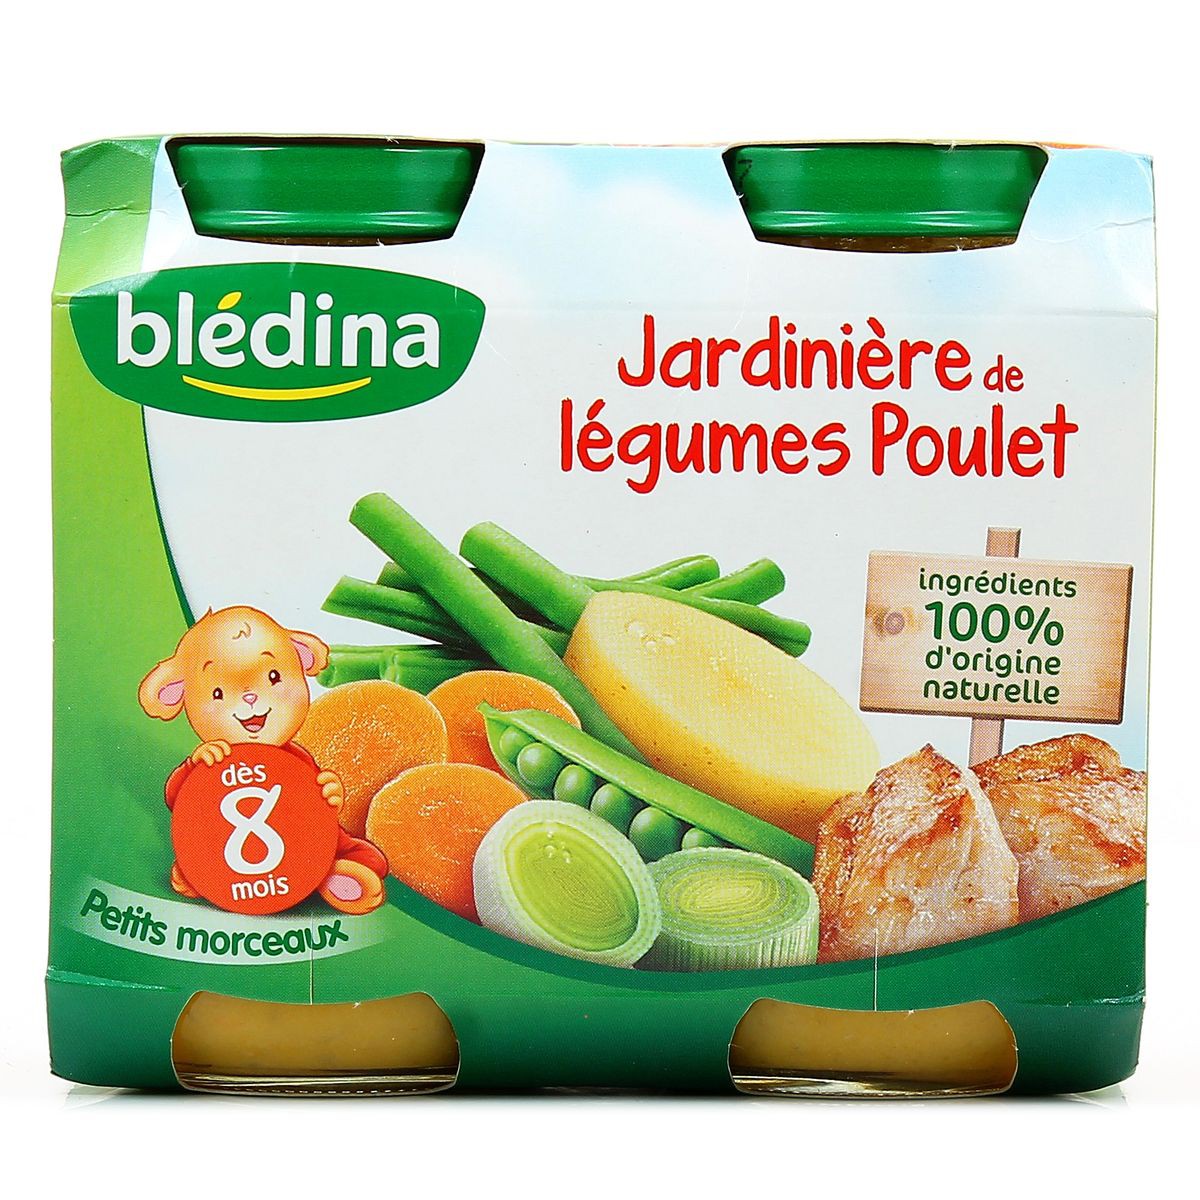 Petit pot jardinière de légumes, poulet - dès 8 mois, Blédina (2 x